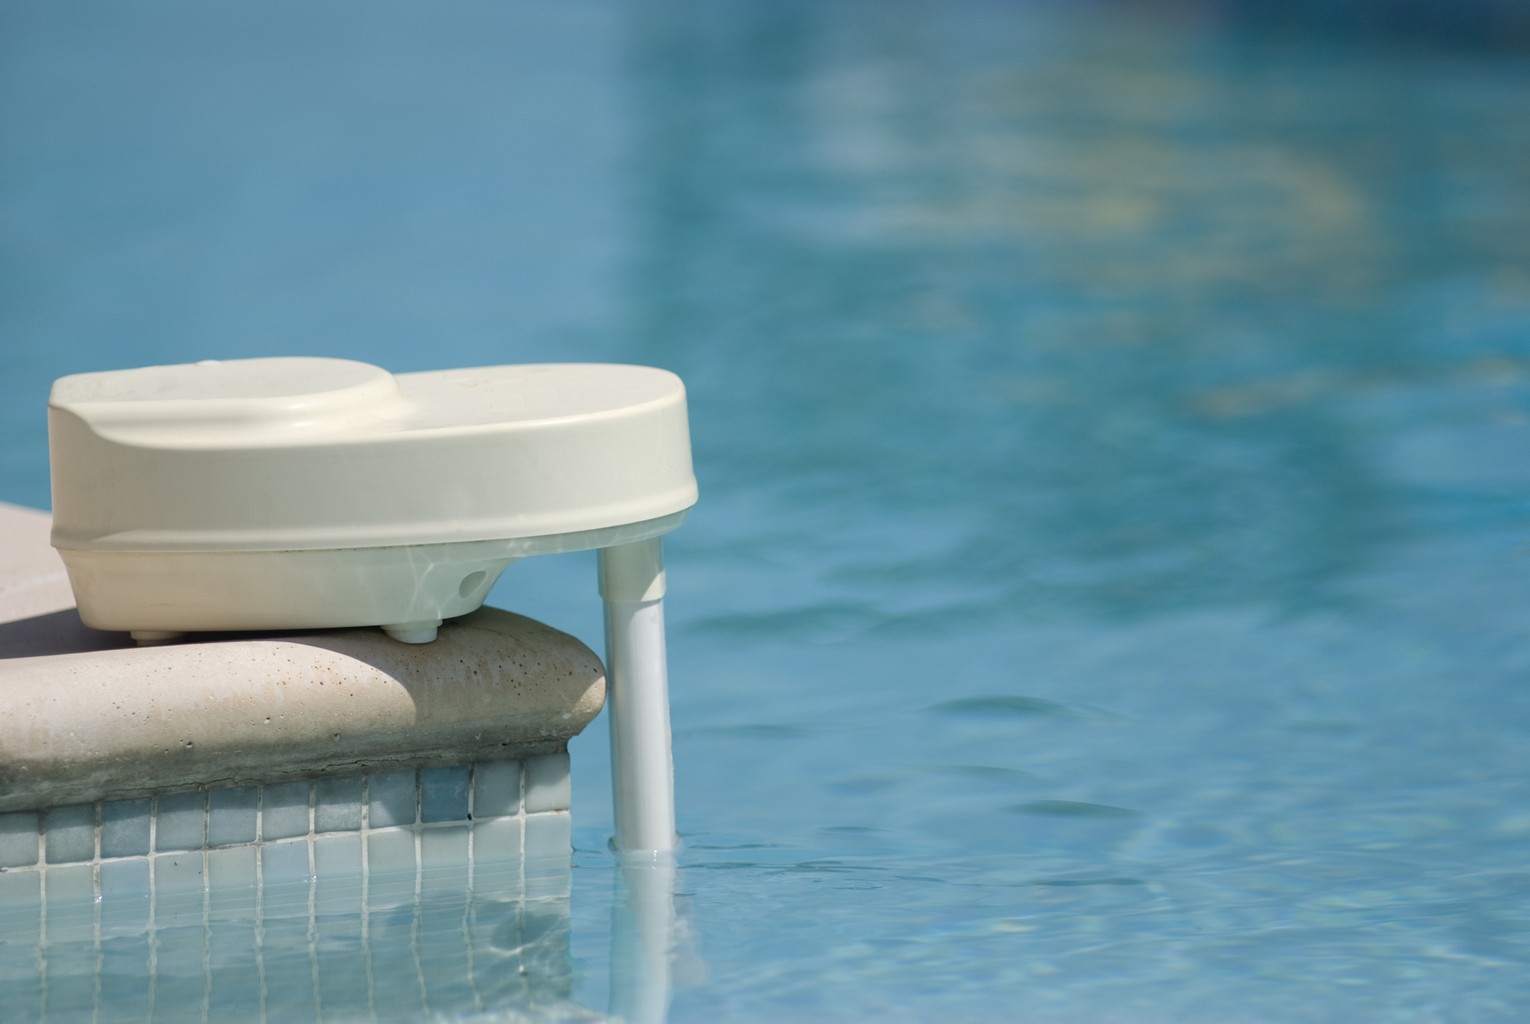 Dispositifs de sécurité : votre piscine doit en bénéficier